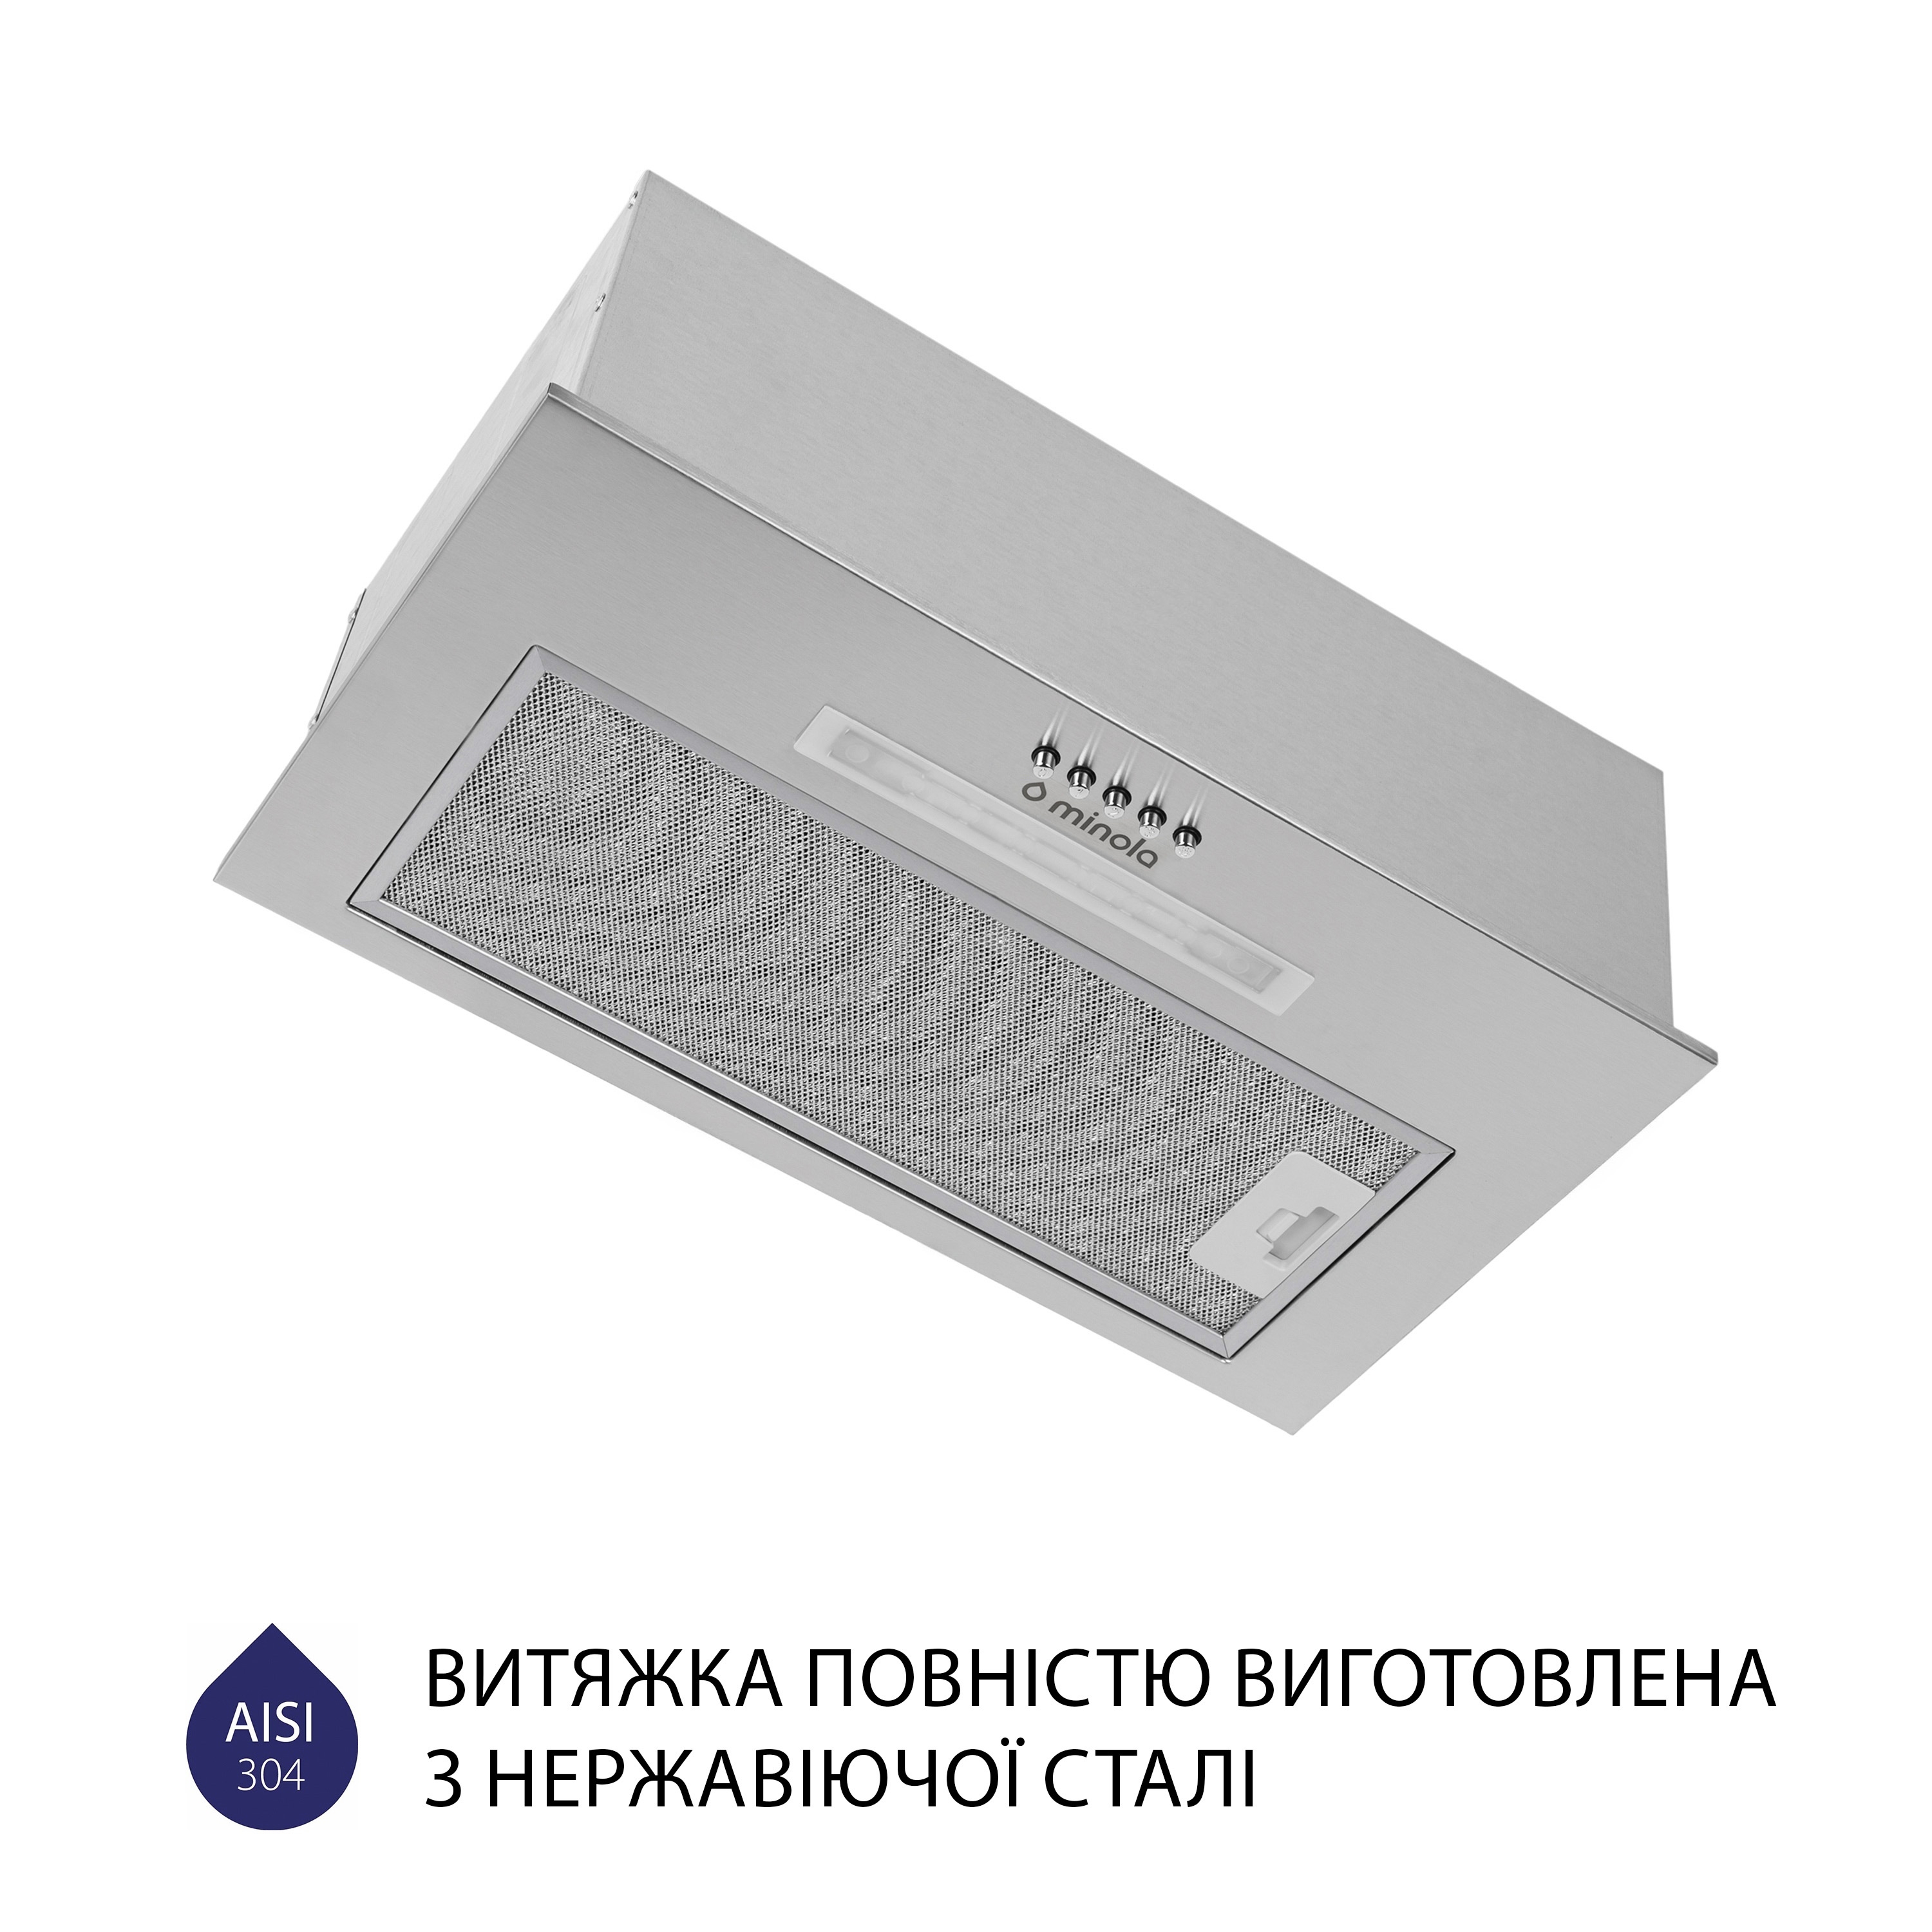 продаём Minola HBI 5223 I 700 LED в Украине - фото 4